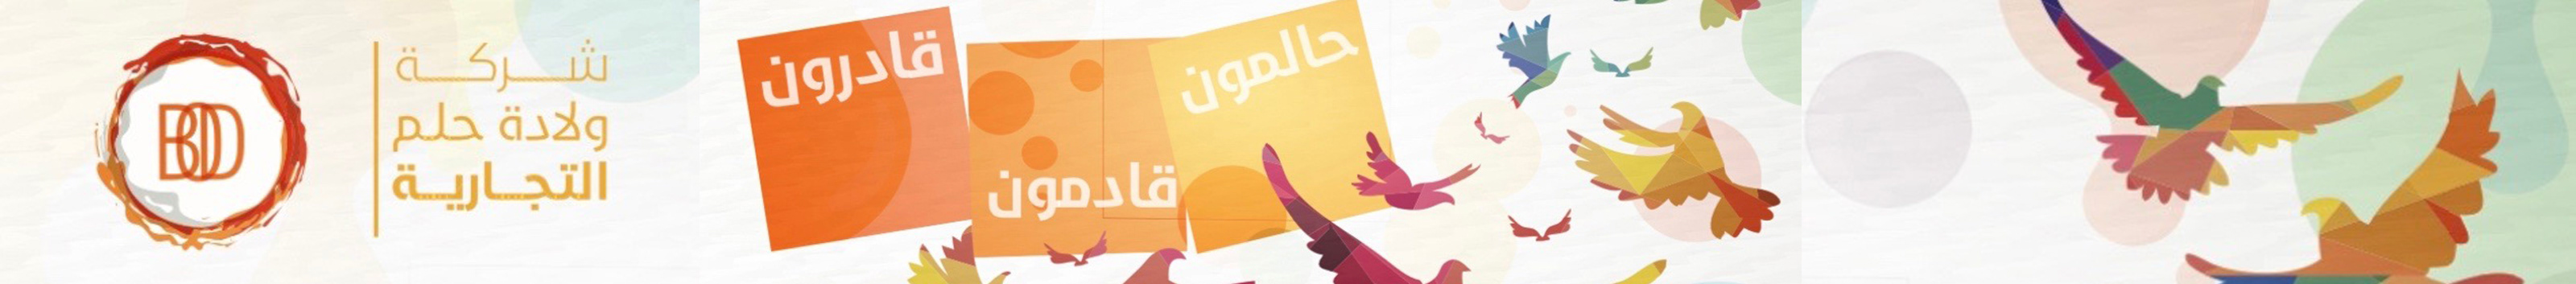 شركة ولادة حلم شعارنا #حقق's profile banner